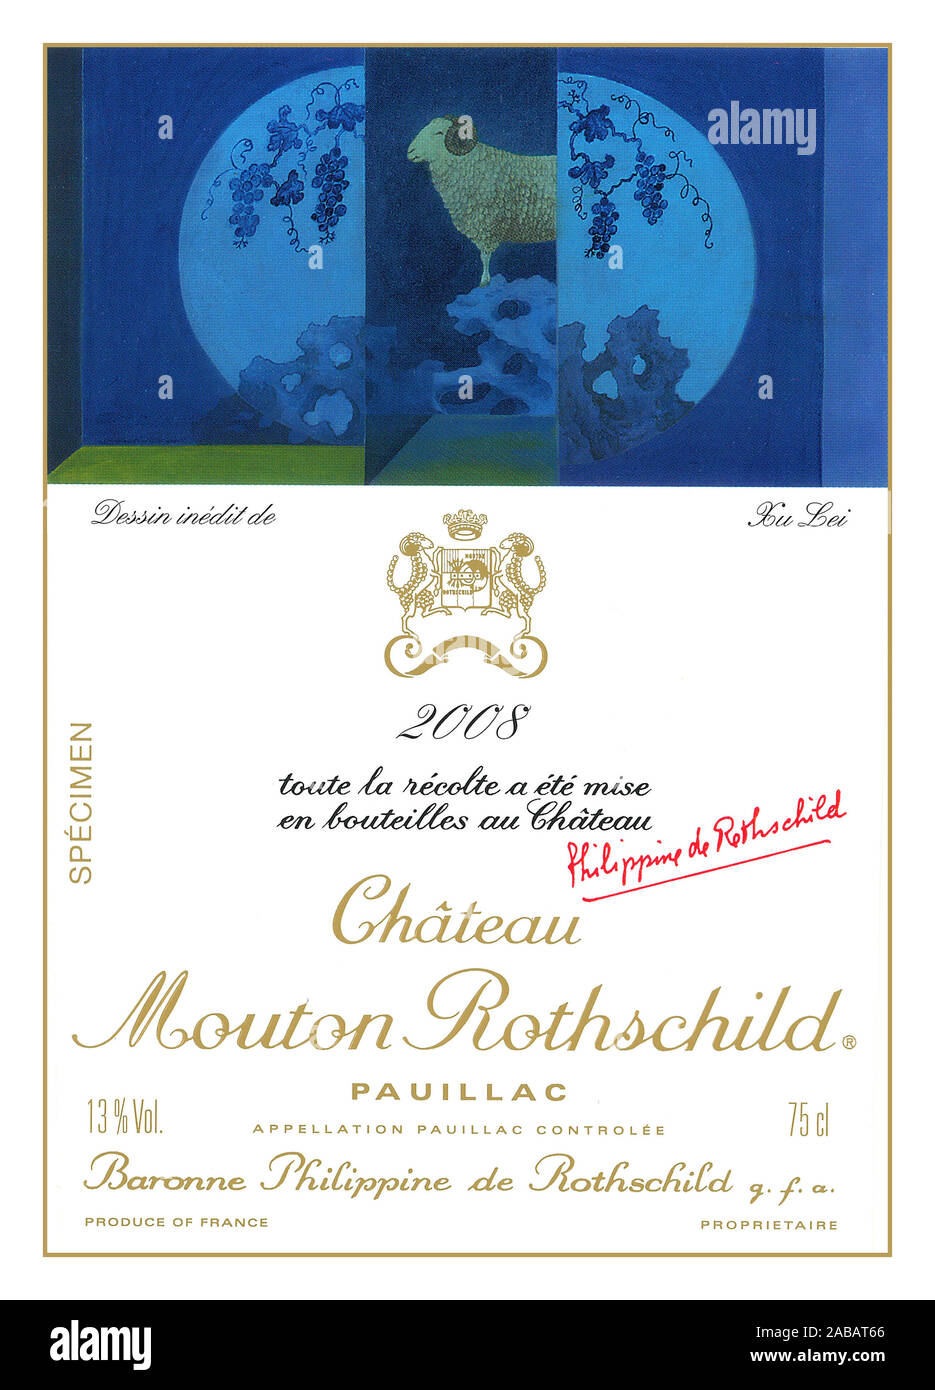 PAUILLAC Vintage Wine bottle label pour l'un des plus grands vins de Bordeaux Château Mouton Rothschild 2008 Pauillac vin rouge de Bordeaux Banque D'Images